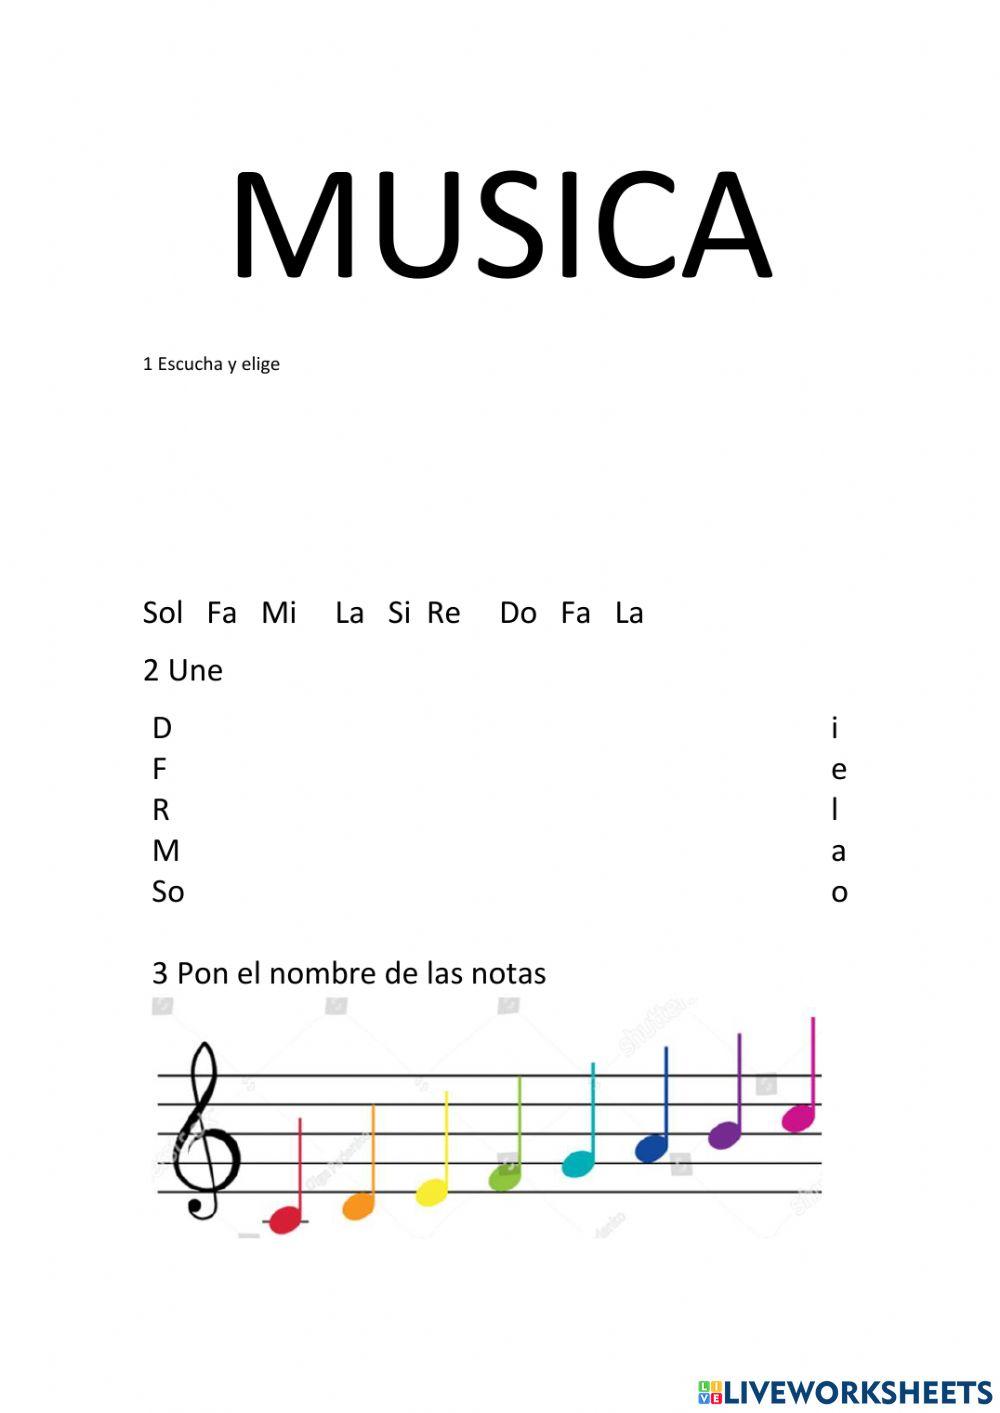 Música: las notas